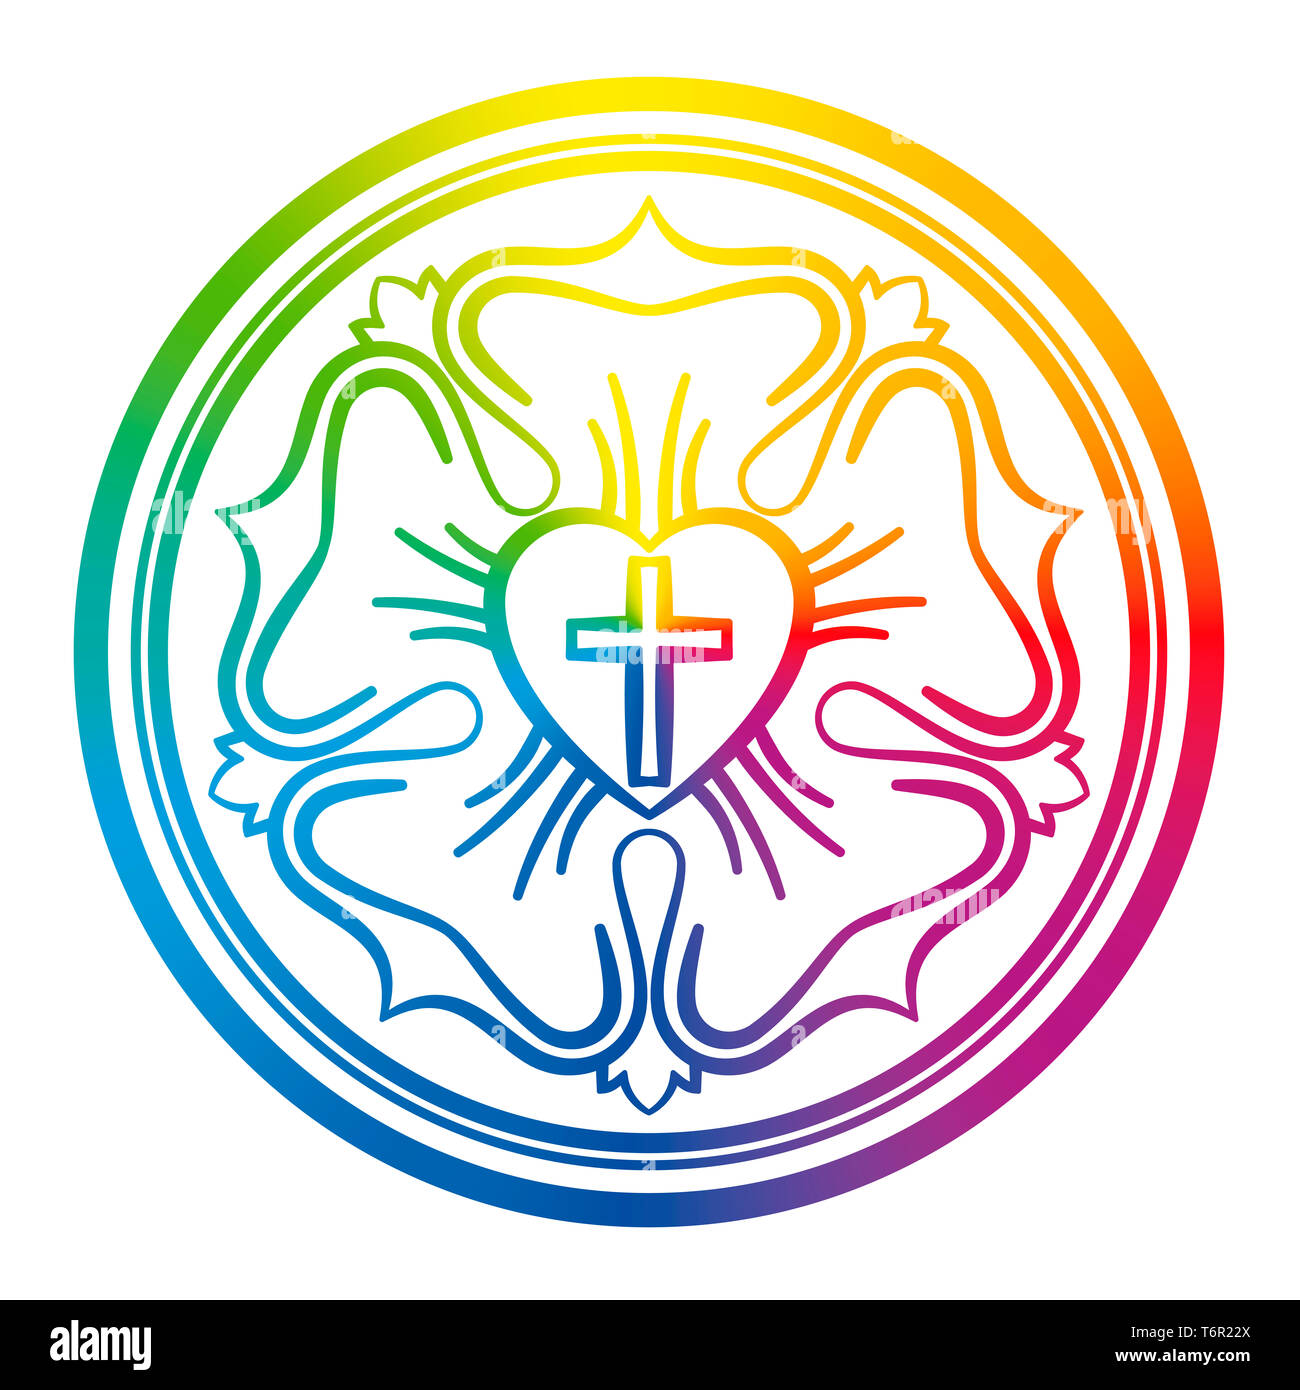 Lutero rose símbolo. Rainbow señal coloreada de los luteranos y protestantes, que consta de una cruz, un corazón, una rosa y un anillo. Foto de stock